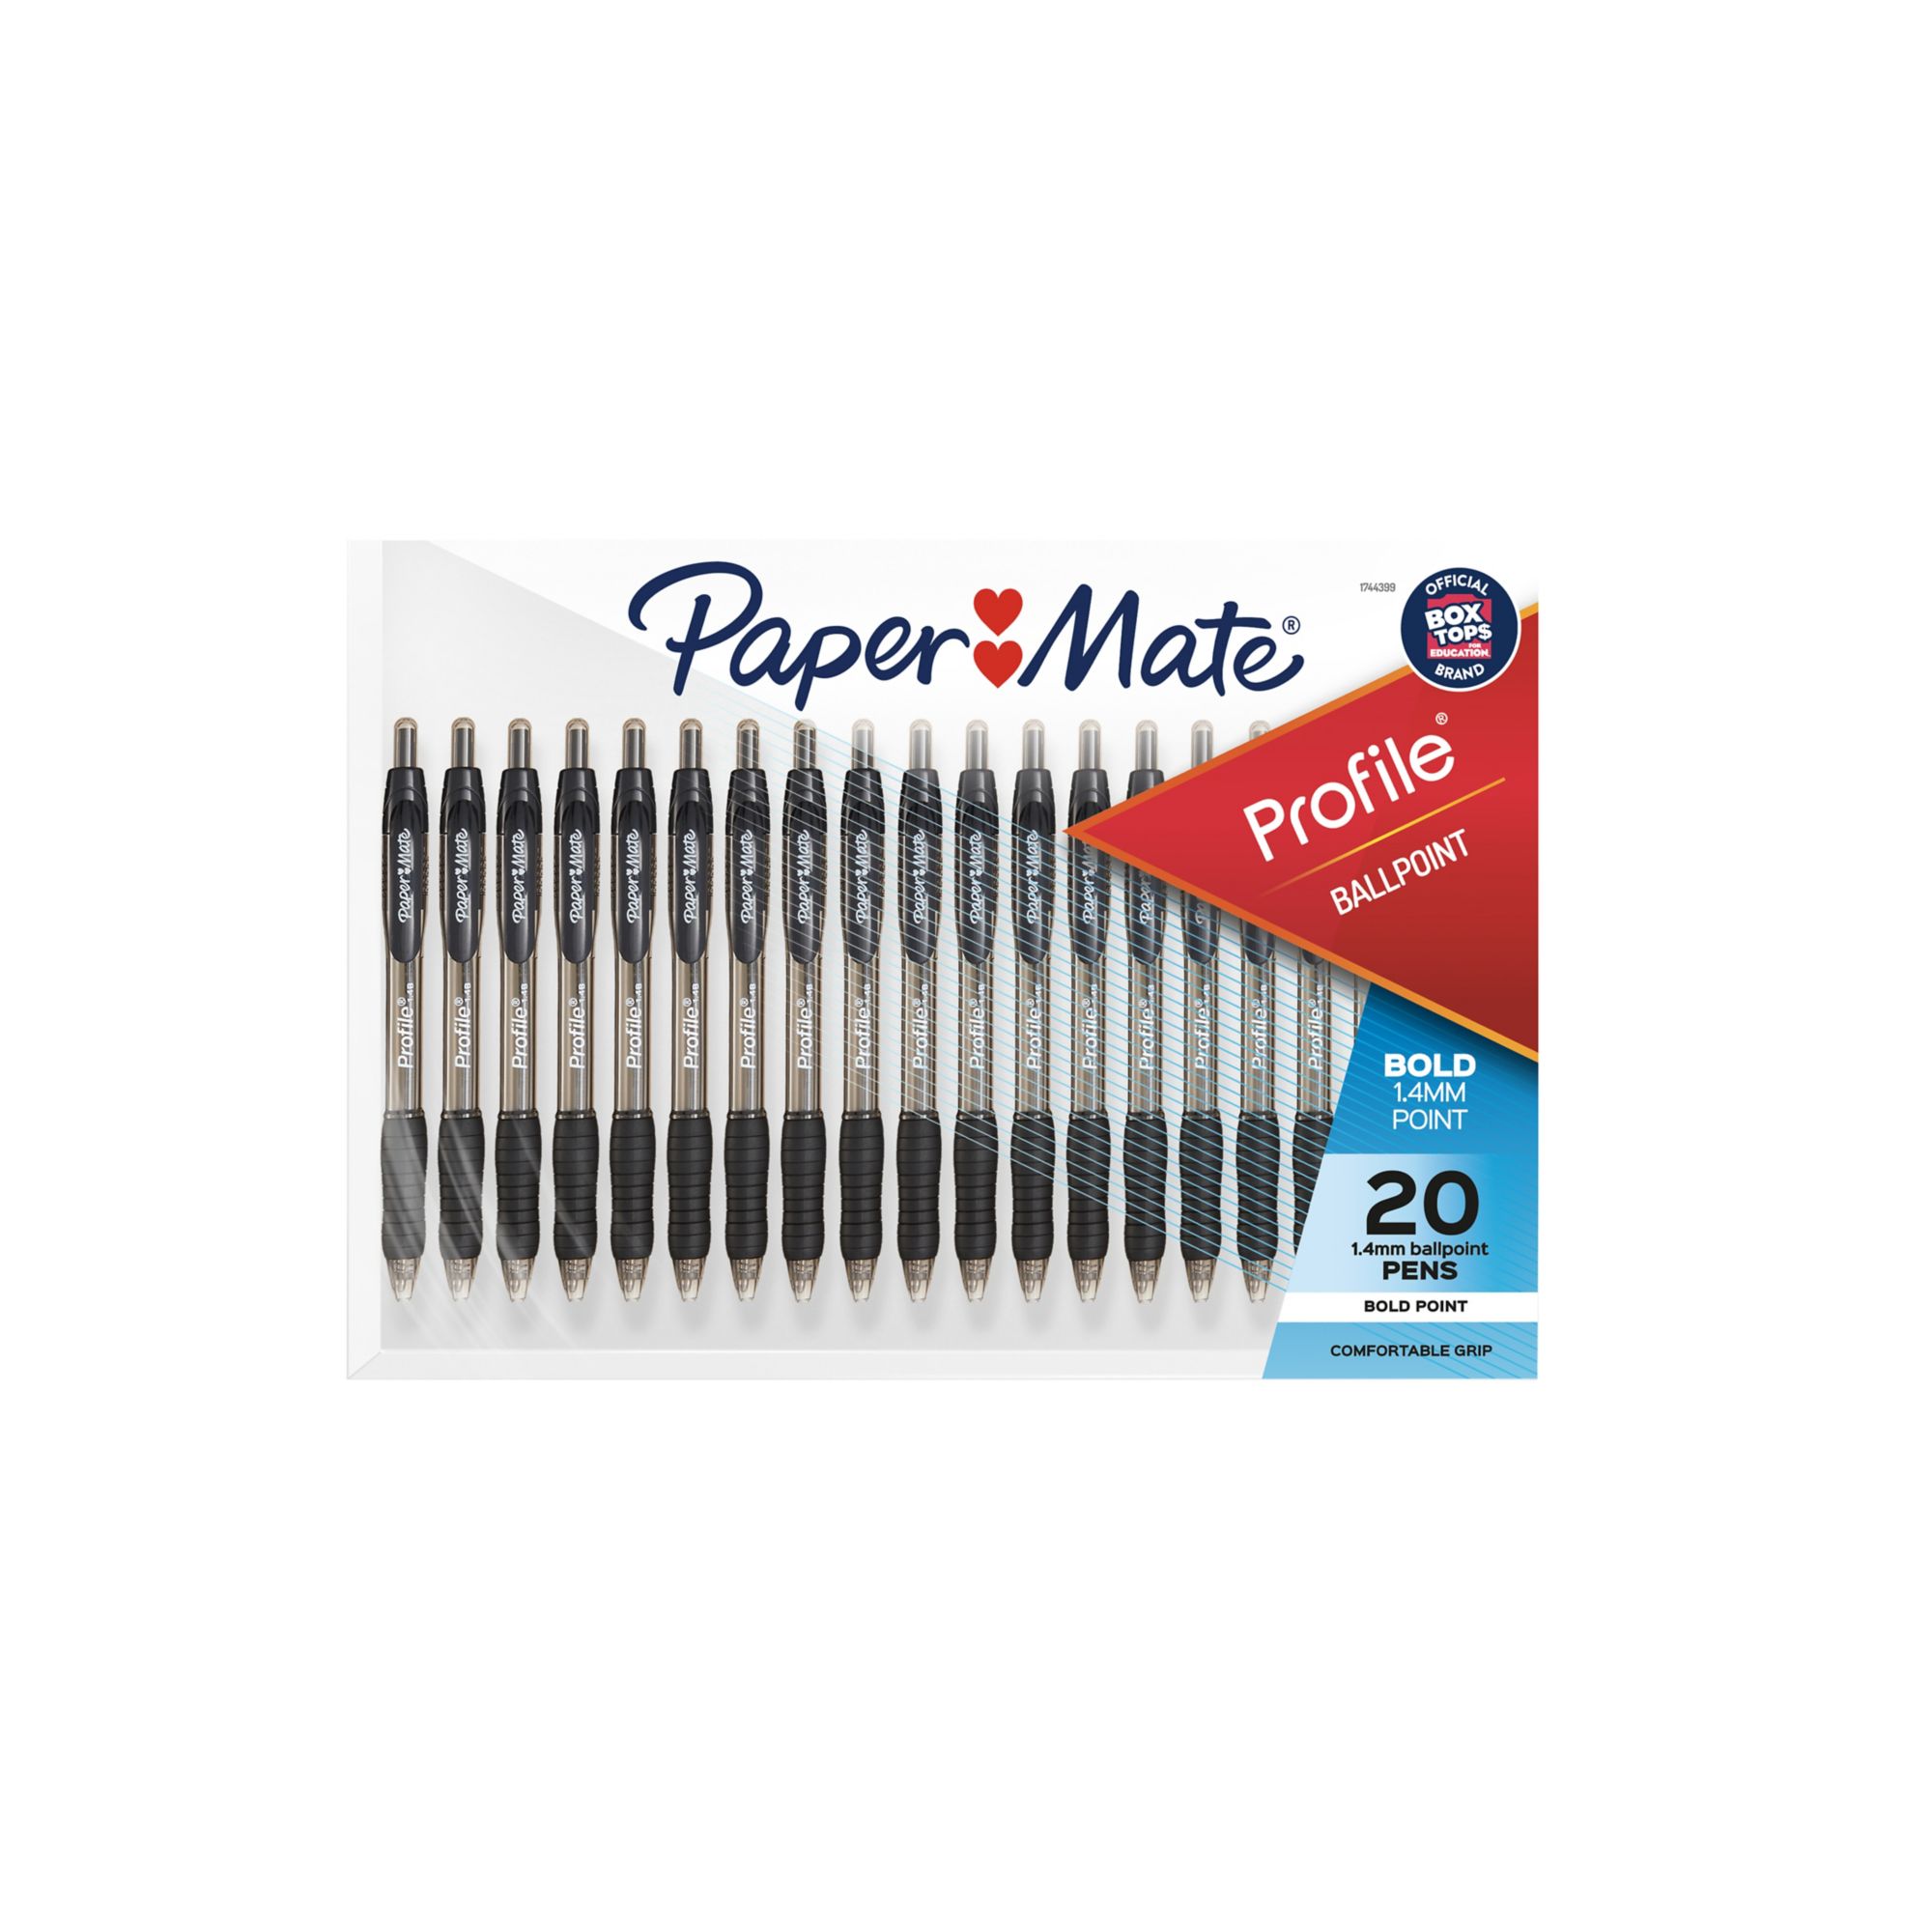 Paper Mate Profile Pen, 20 pk. - Black